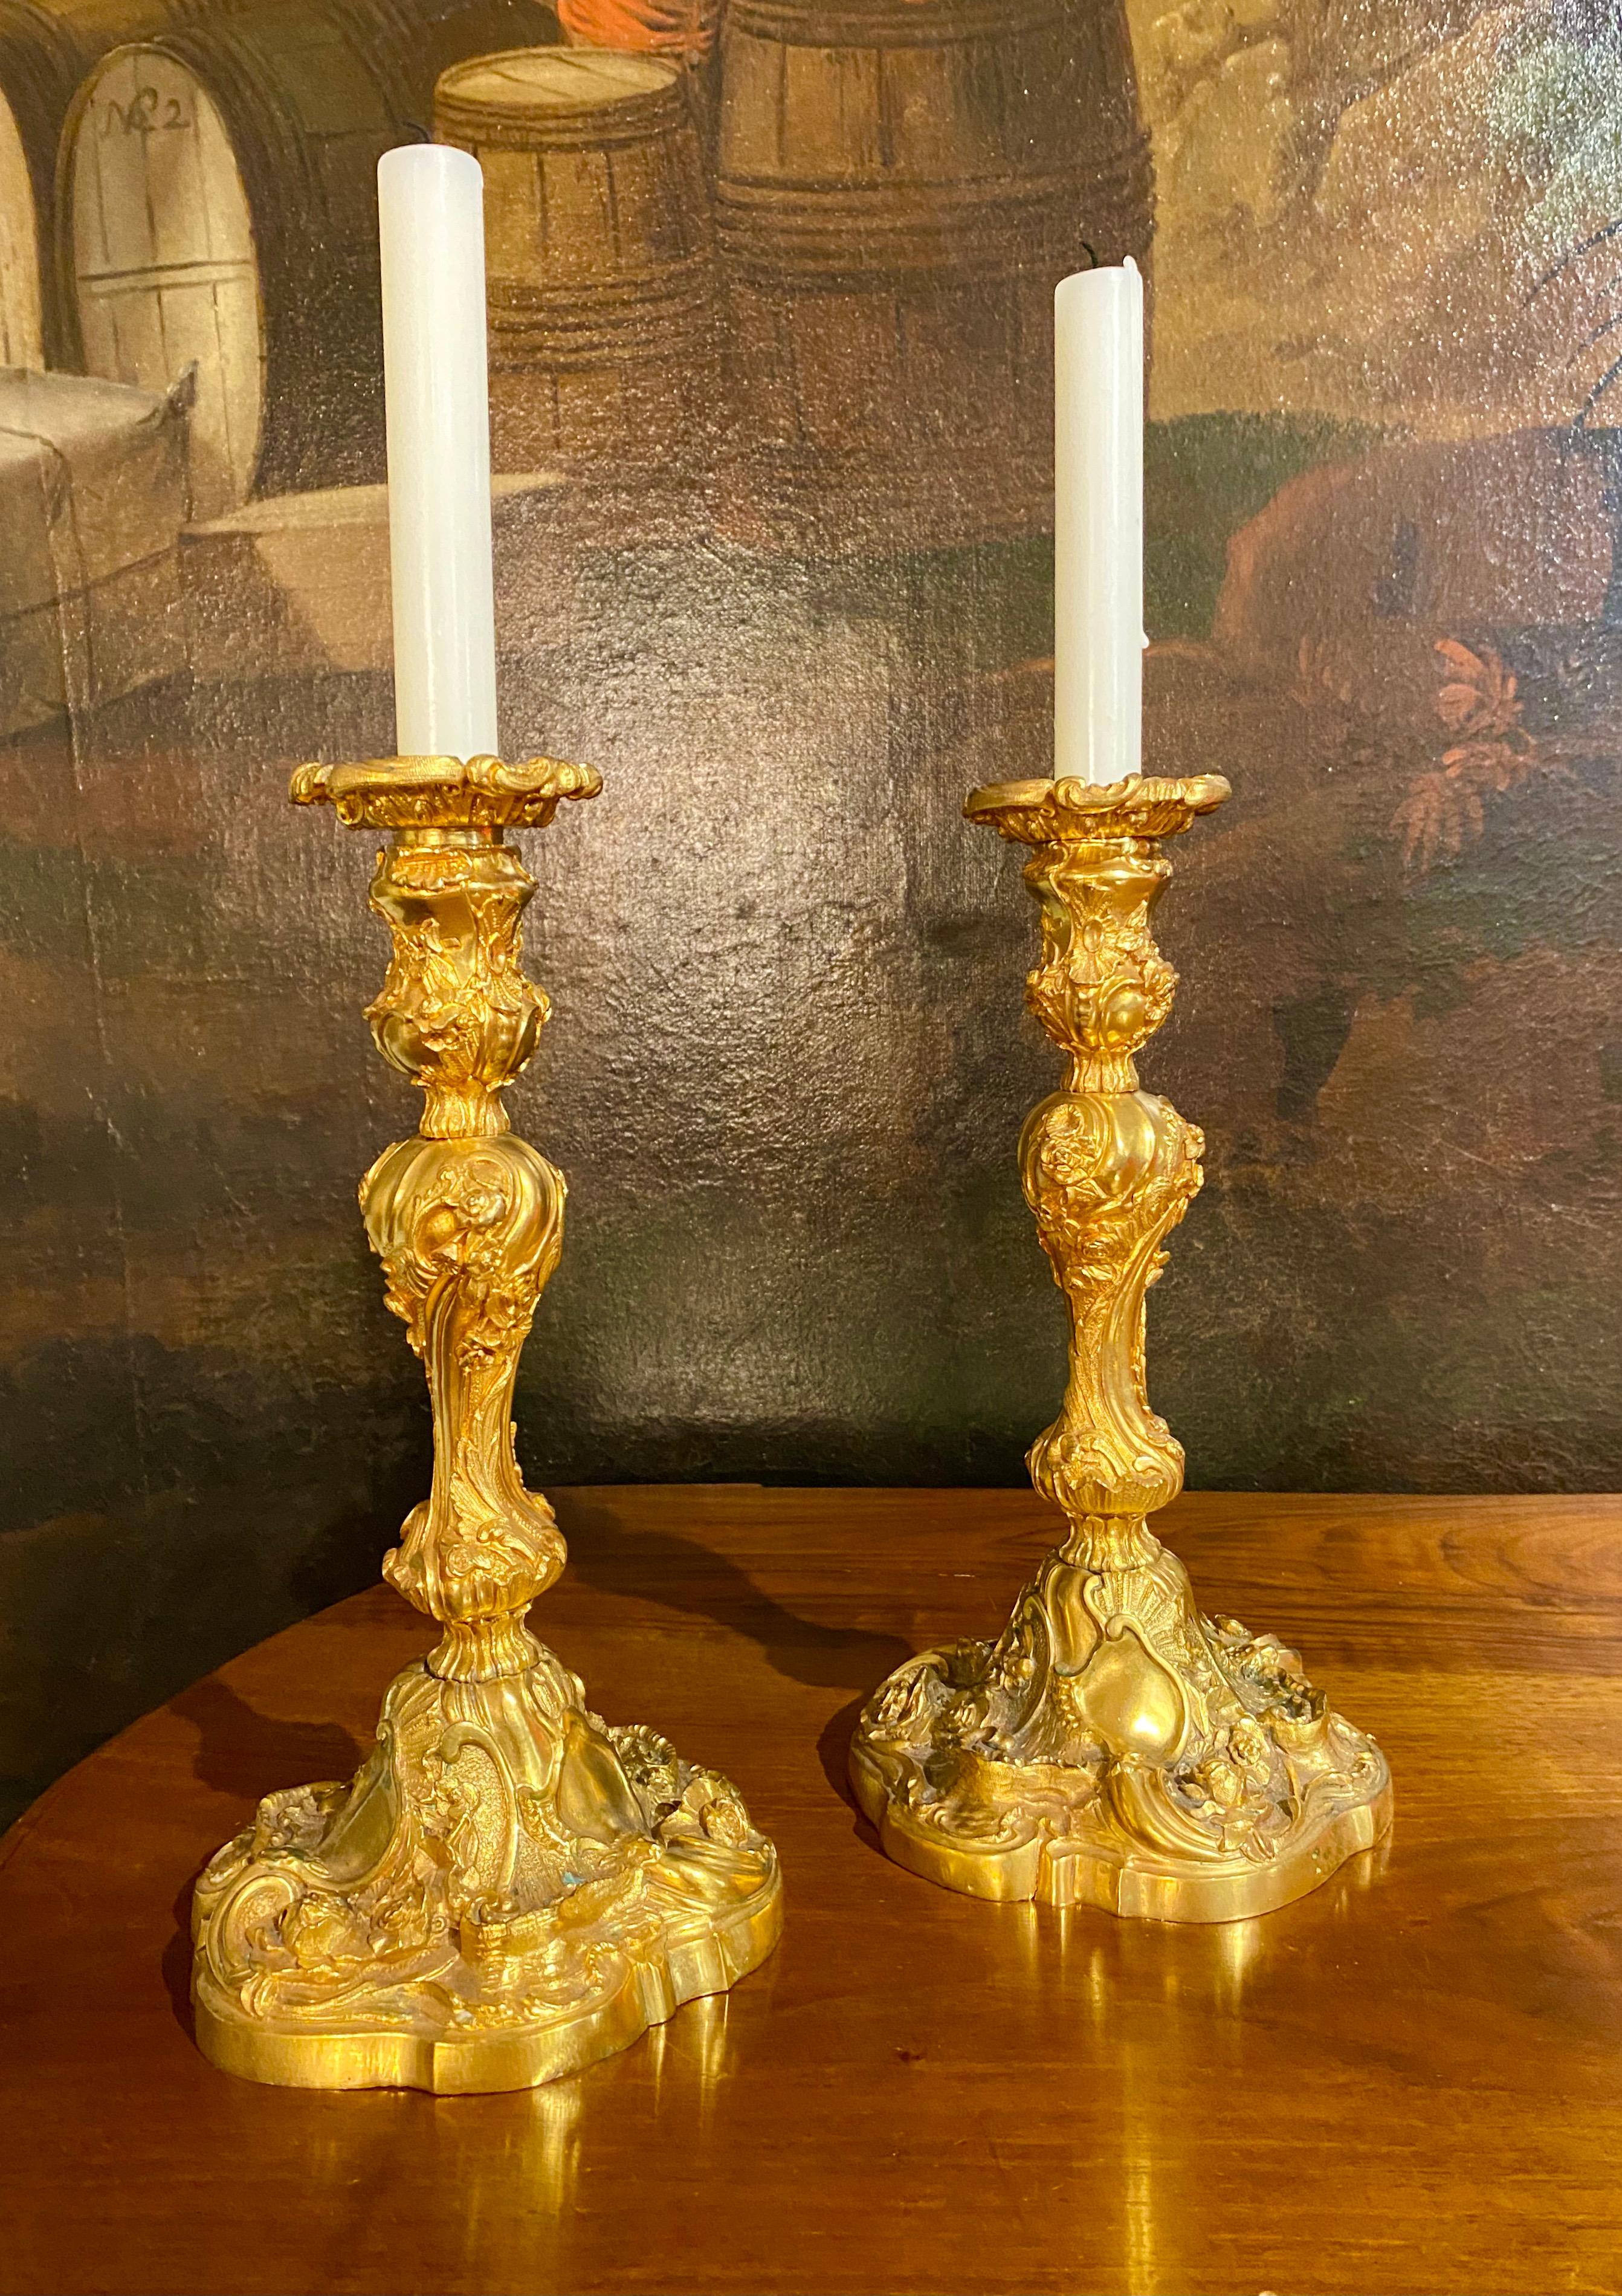 Paire de chandeliers en bronze doré finement ciselé de style Louis XV. Les bases complexes sont décorées de fleurs, de guirlandes, de volutes et de coquillages. Rocaille et godrons tournent autour de la tige dans le style baroque et rococo, et